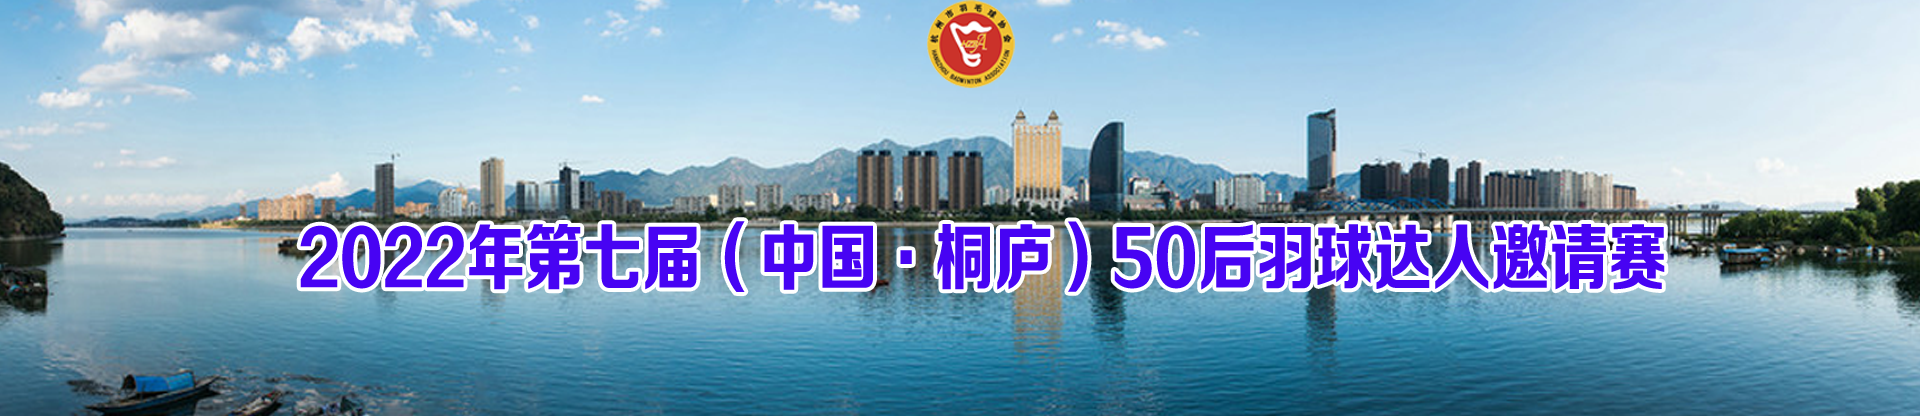 2022年第七届（中国•桐庐）50后羽球达人邀请赛